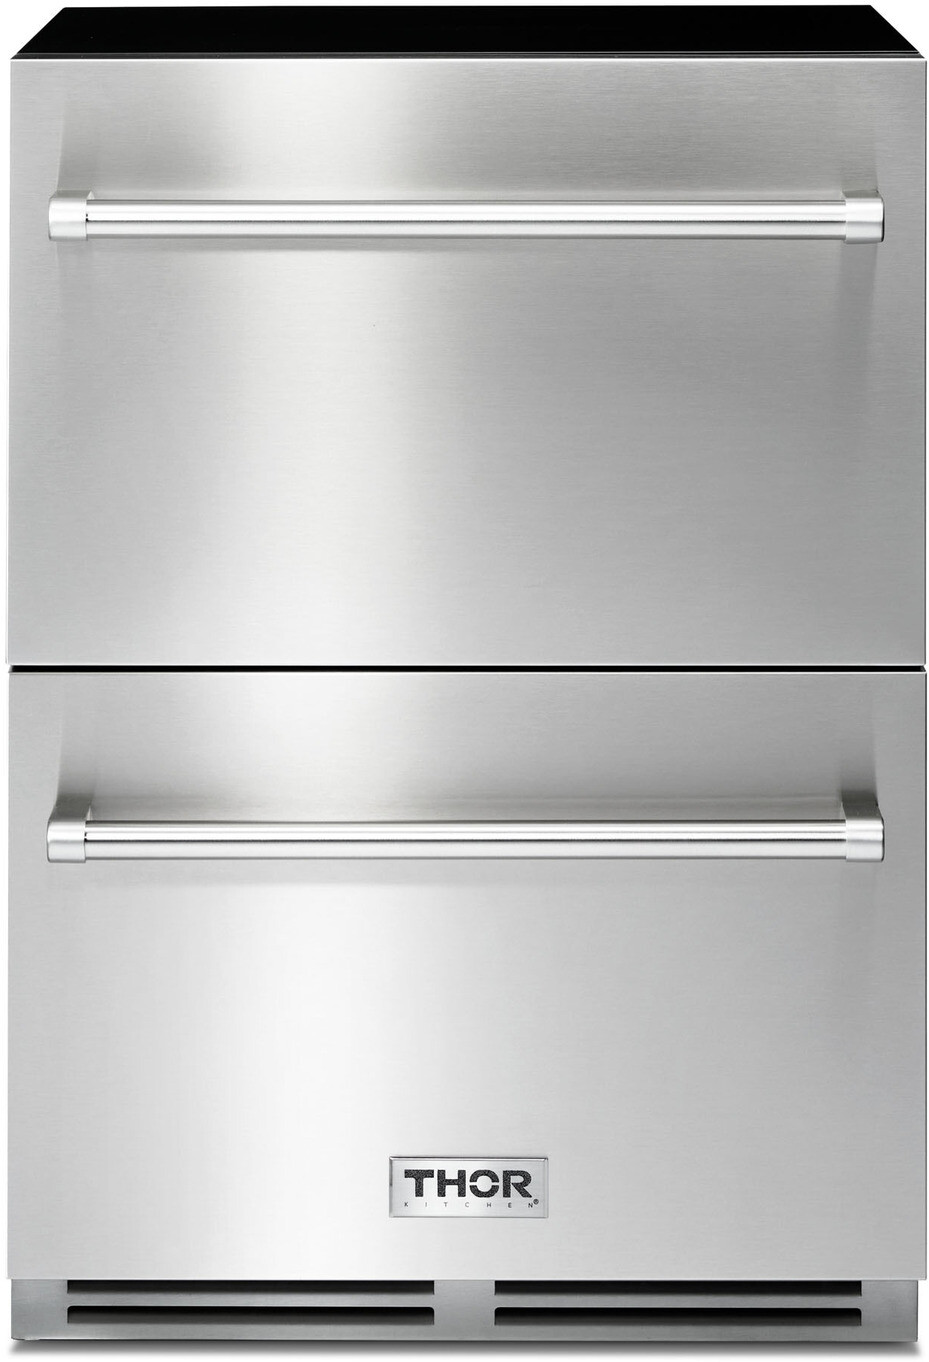 24 Inch Kitchen 24"" Refrigerator Drawers - Thor Kitchen TRF24U